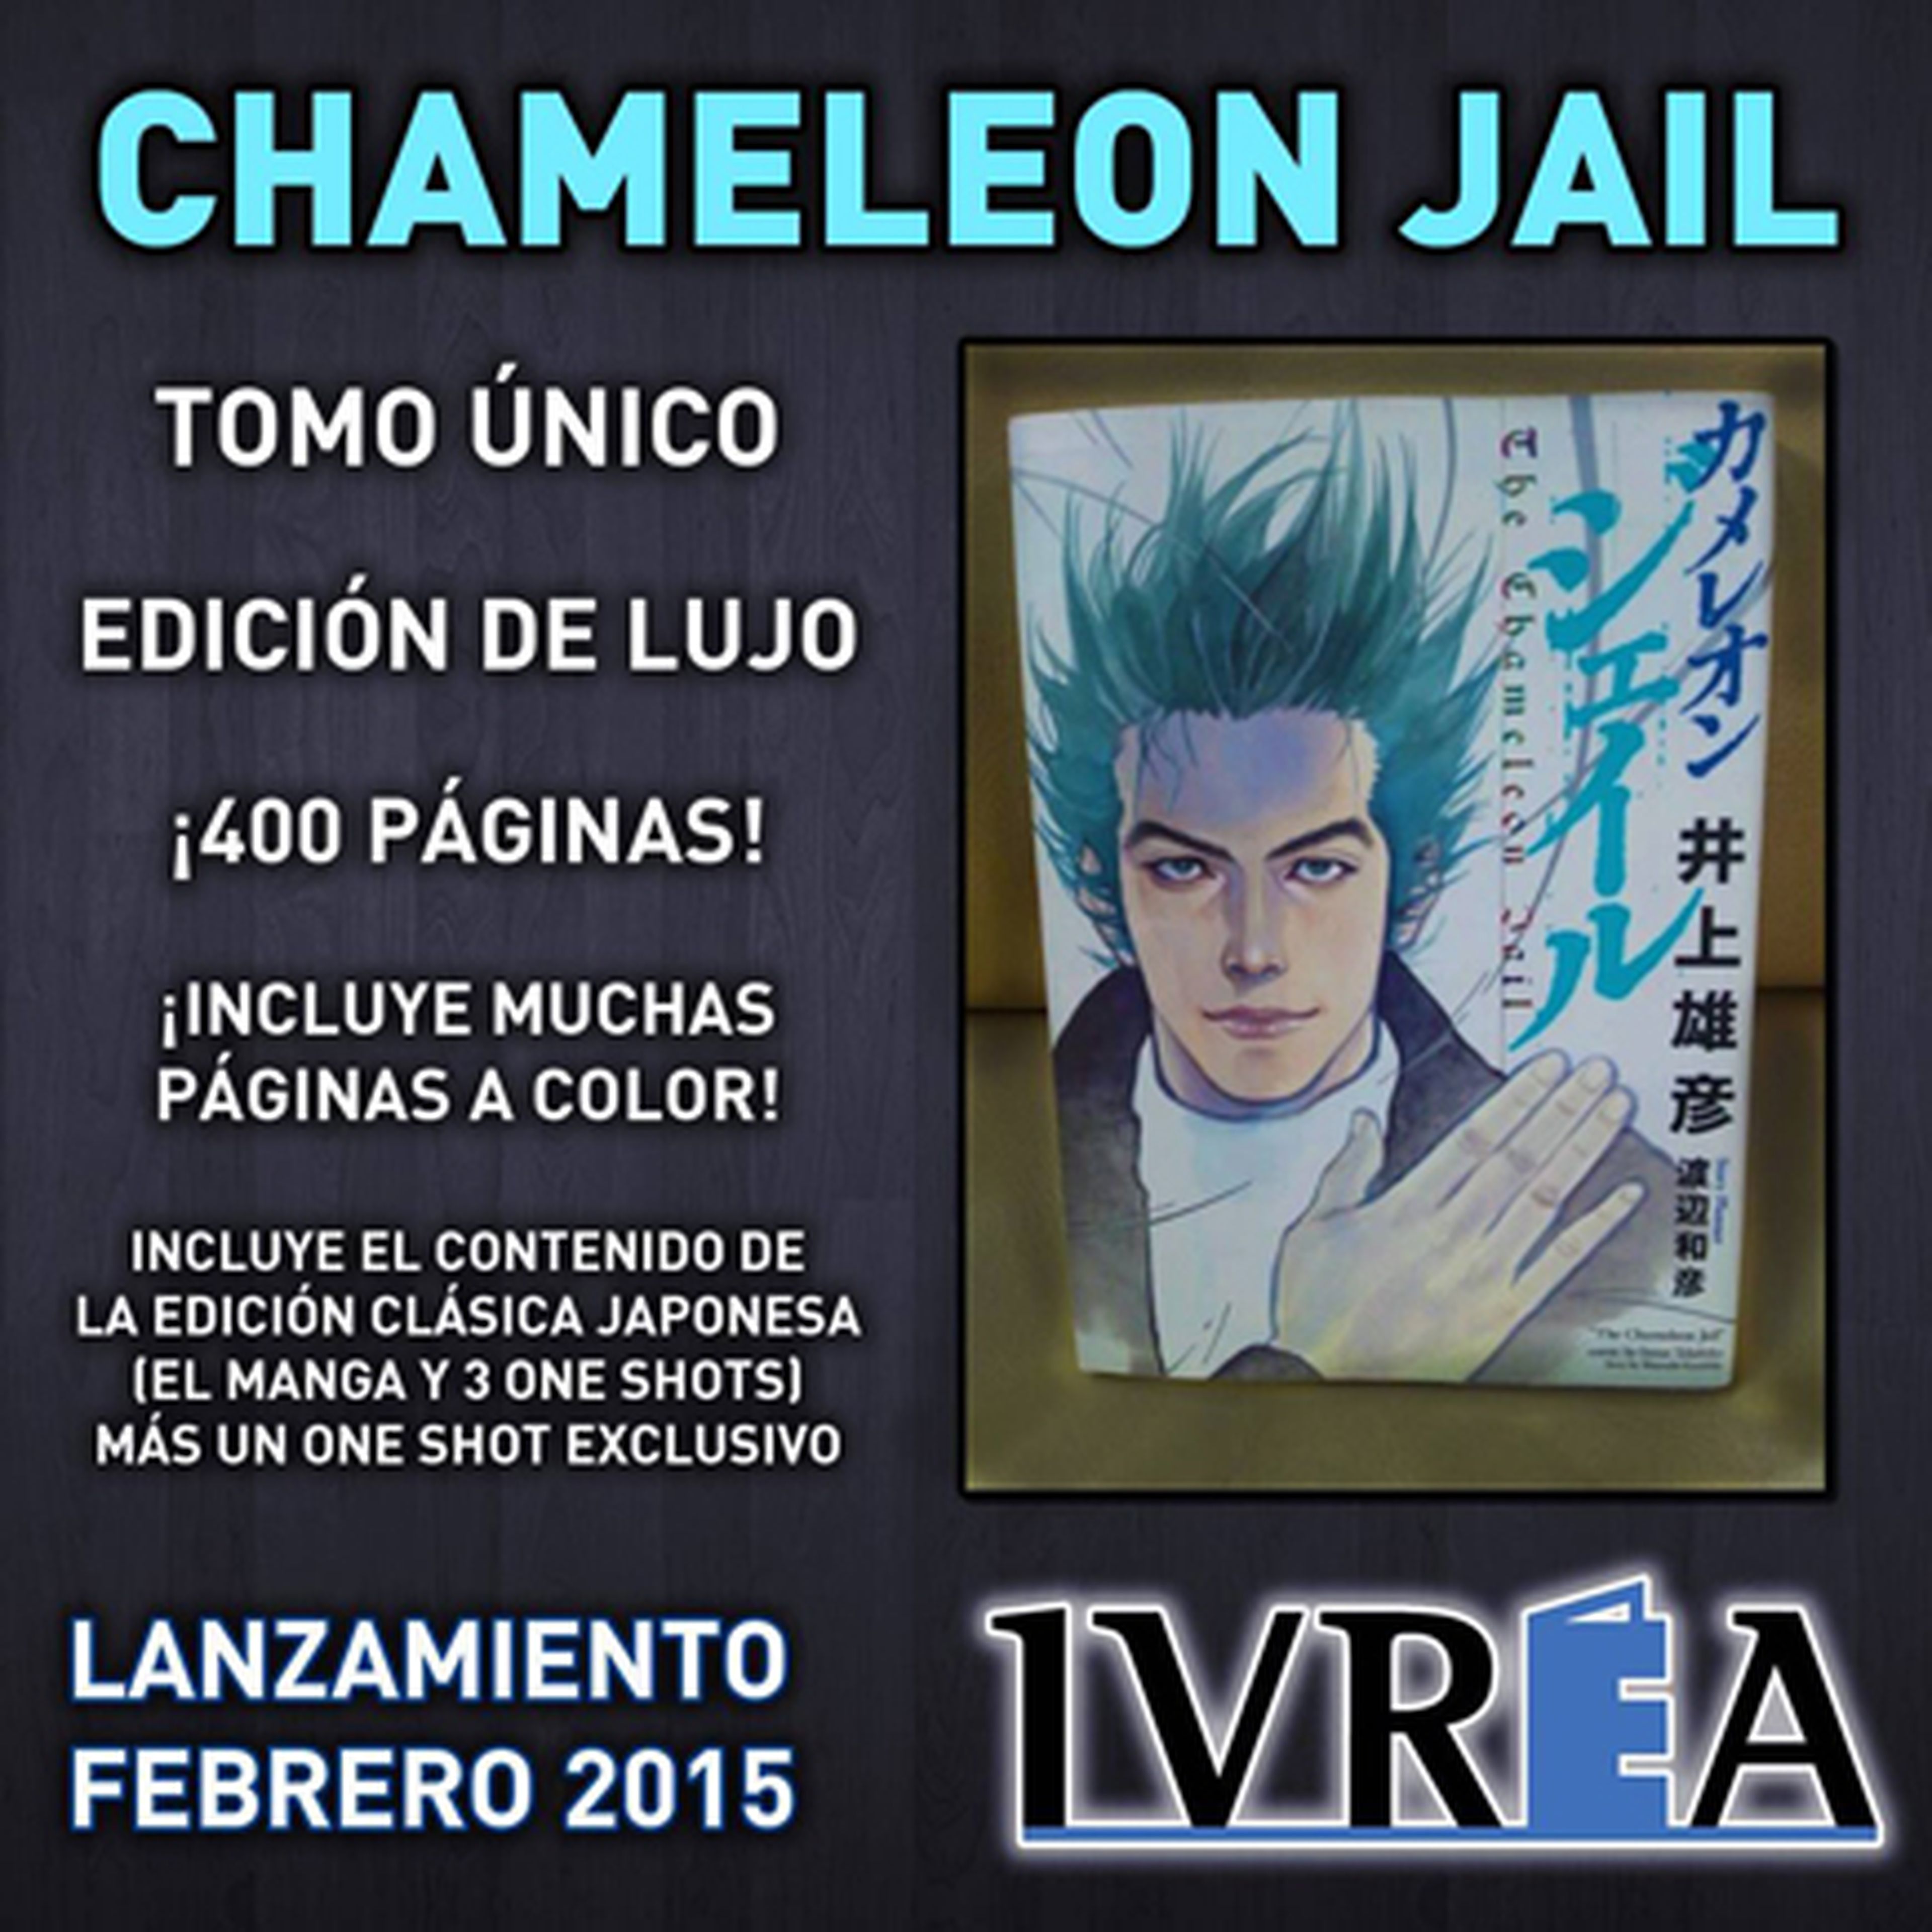 Chameleon Jail, licenciado en España